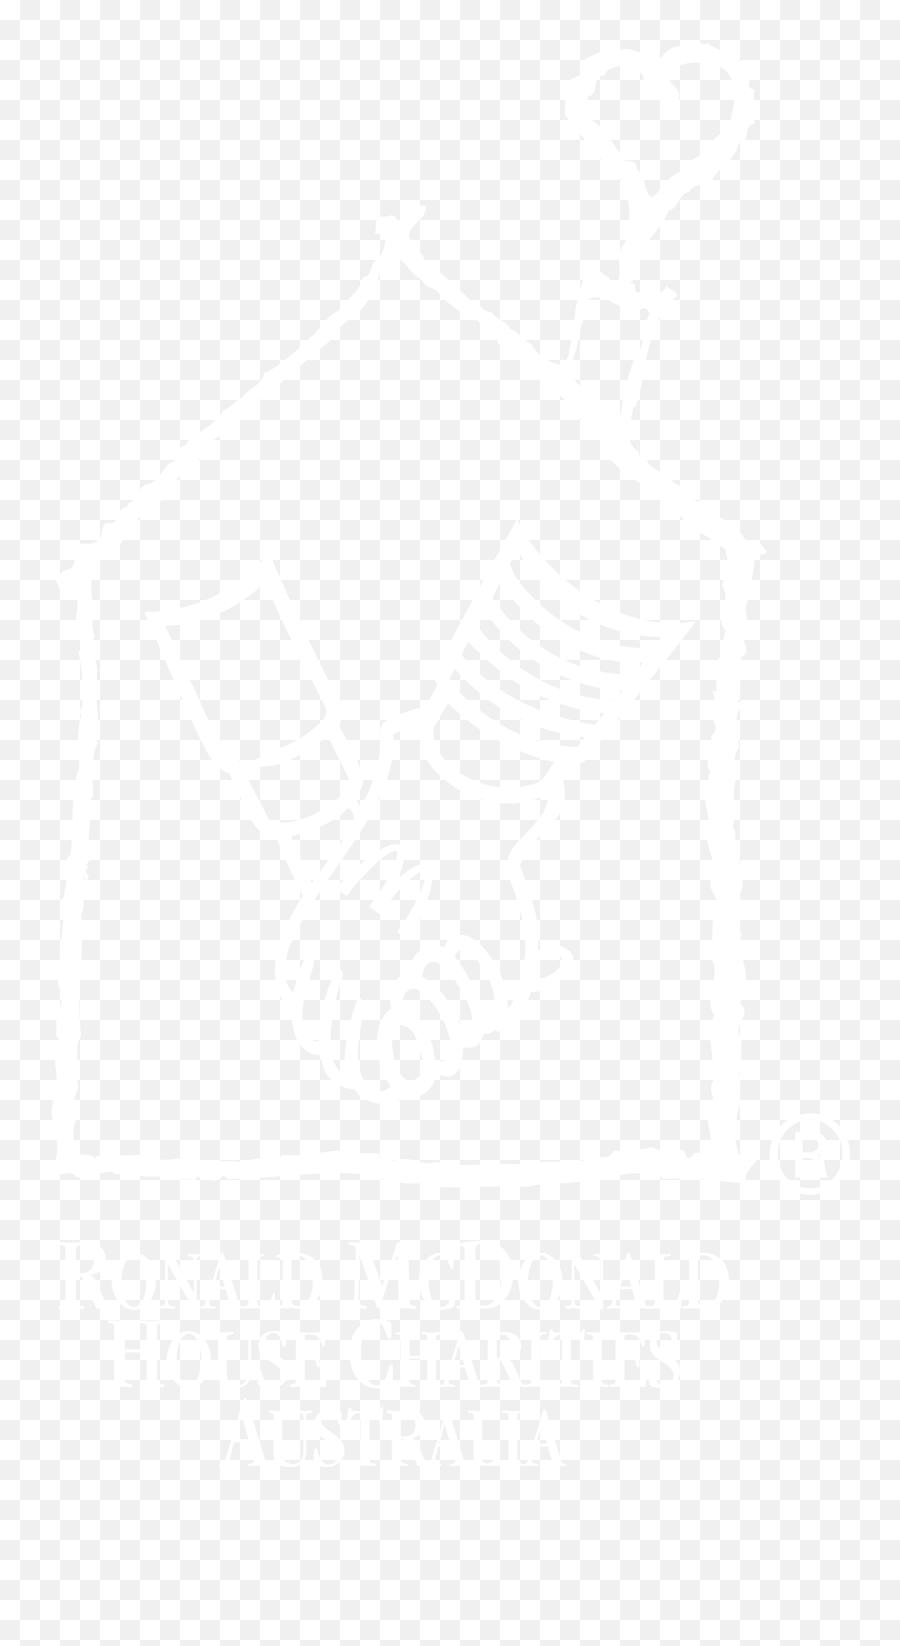 Logo - Ronald Mcdonald House Logo White Full Size Png Language,Ronald Mcdonald Transparent Background